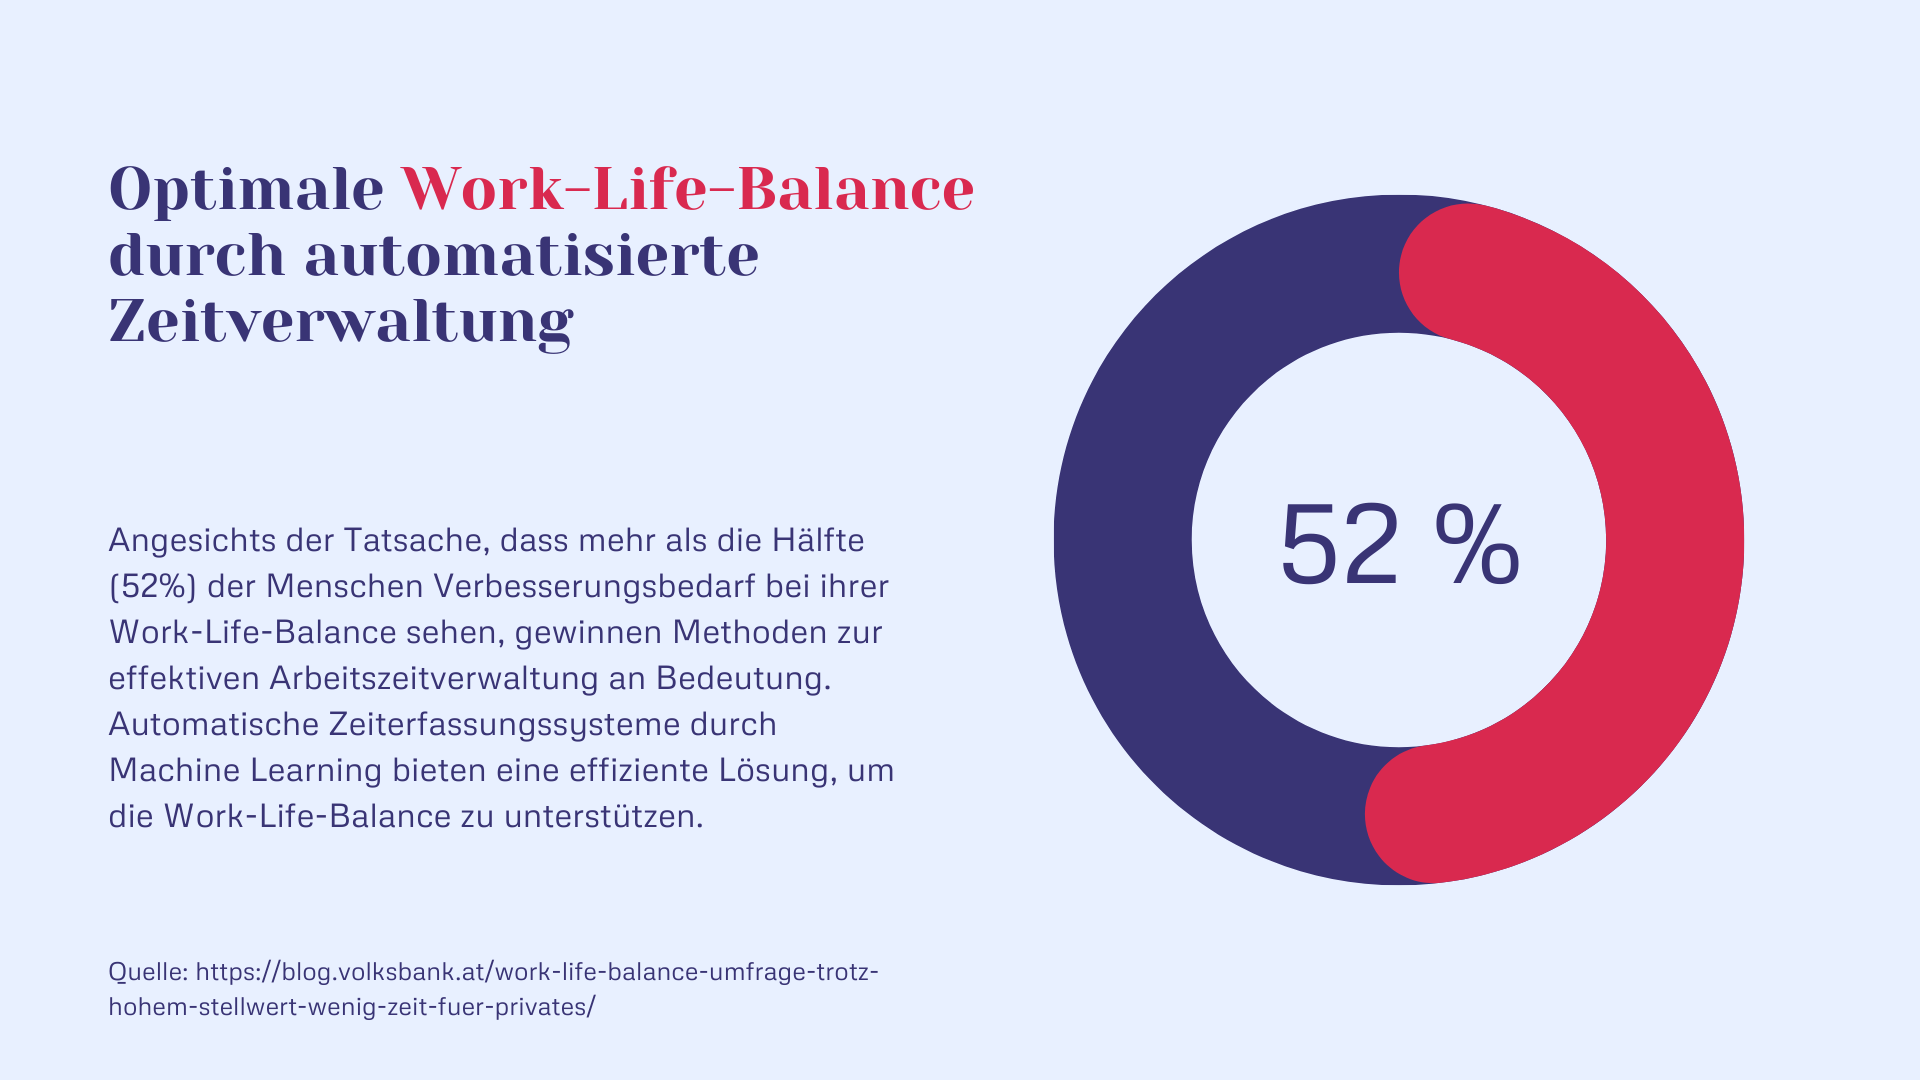 Optimale Work-Life-Balance durch automatisierte Zeiterfassung